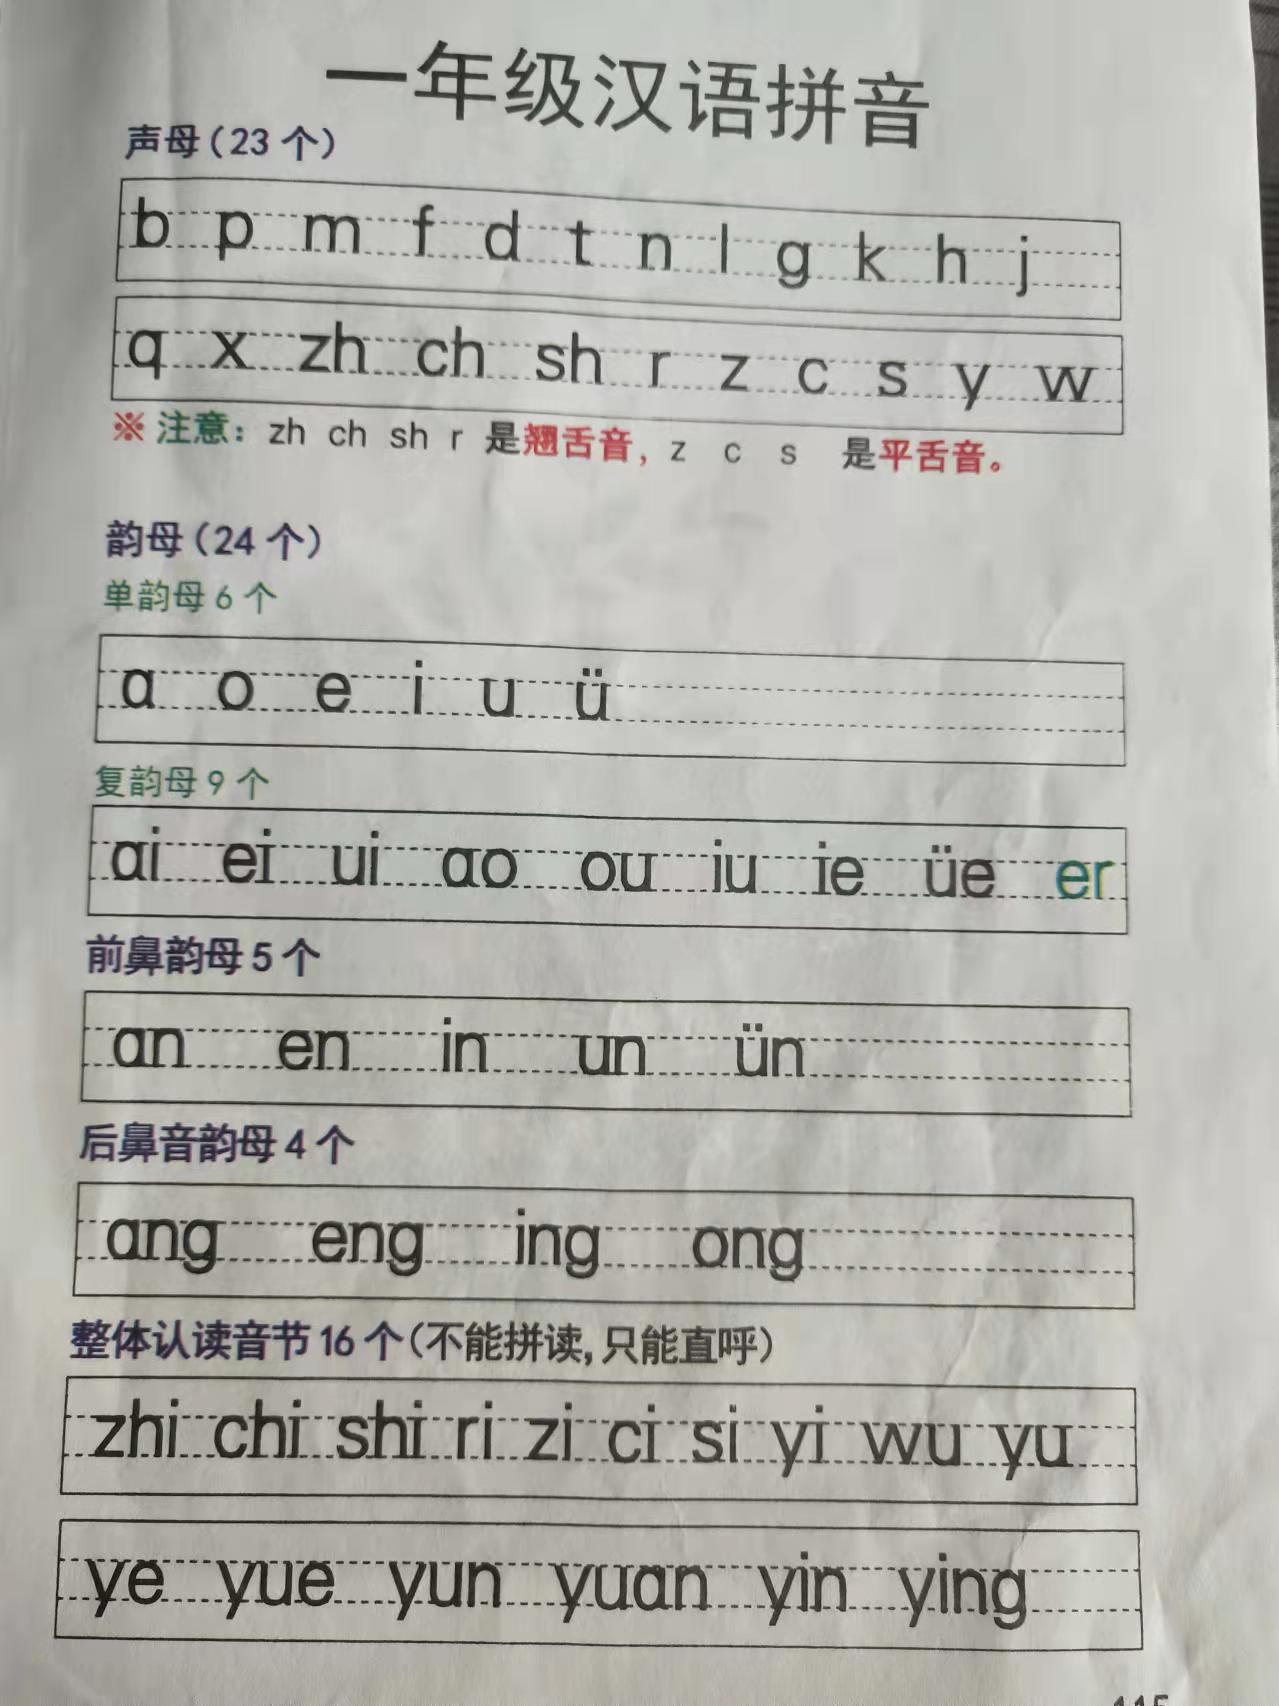 一年级语文上册课堂笔记 汉语拼音 复韵母 9个 ai ei ui ao ou iu ie